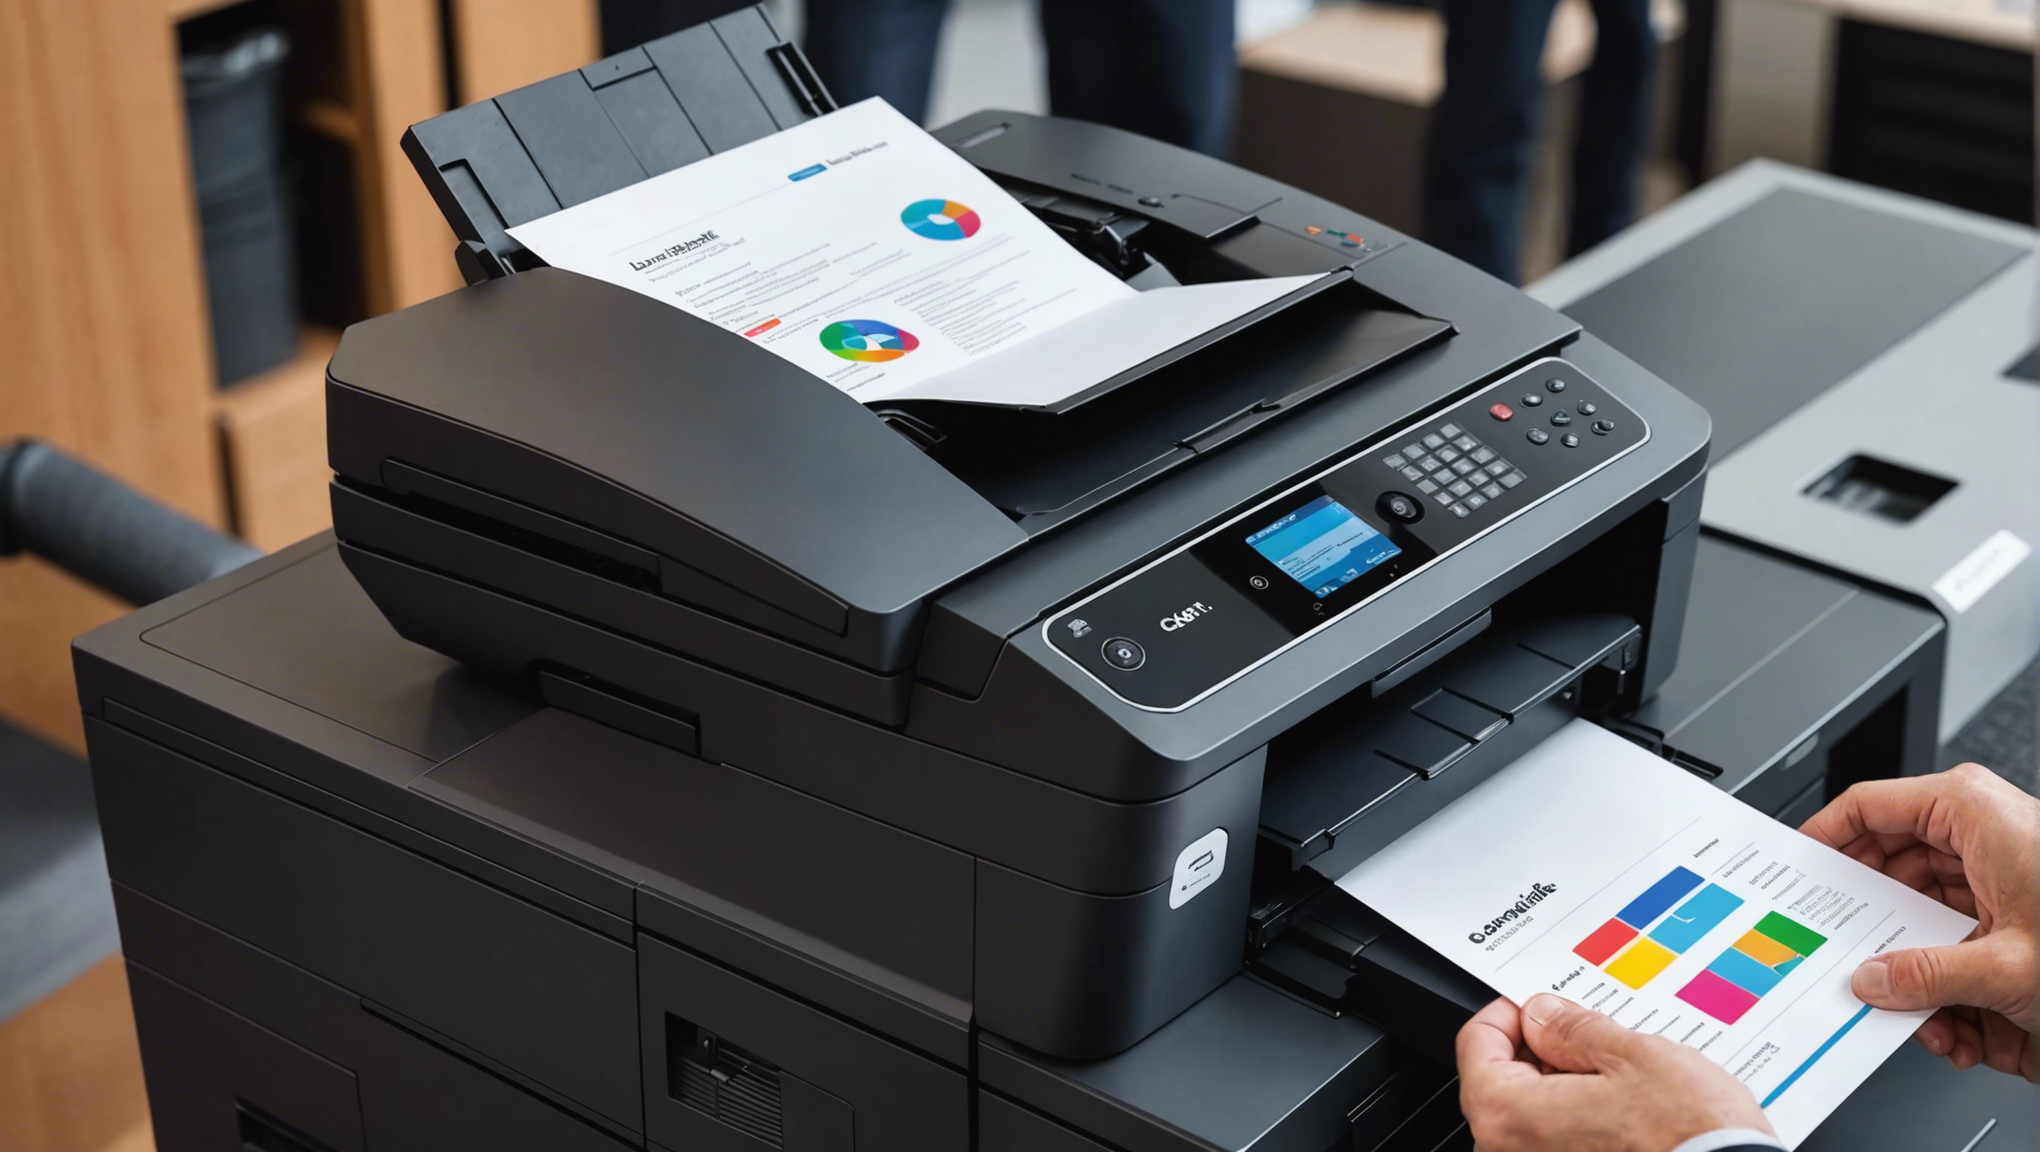 découvrez les imprimantes professionnelles à prix abordables et trouvez celle qui répond le mieux à vos besoins. comprenez ce qu'est une imprimante professionnelle abordable et comment elle peut optimiser votre productivité.